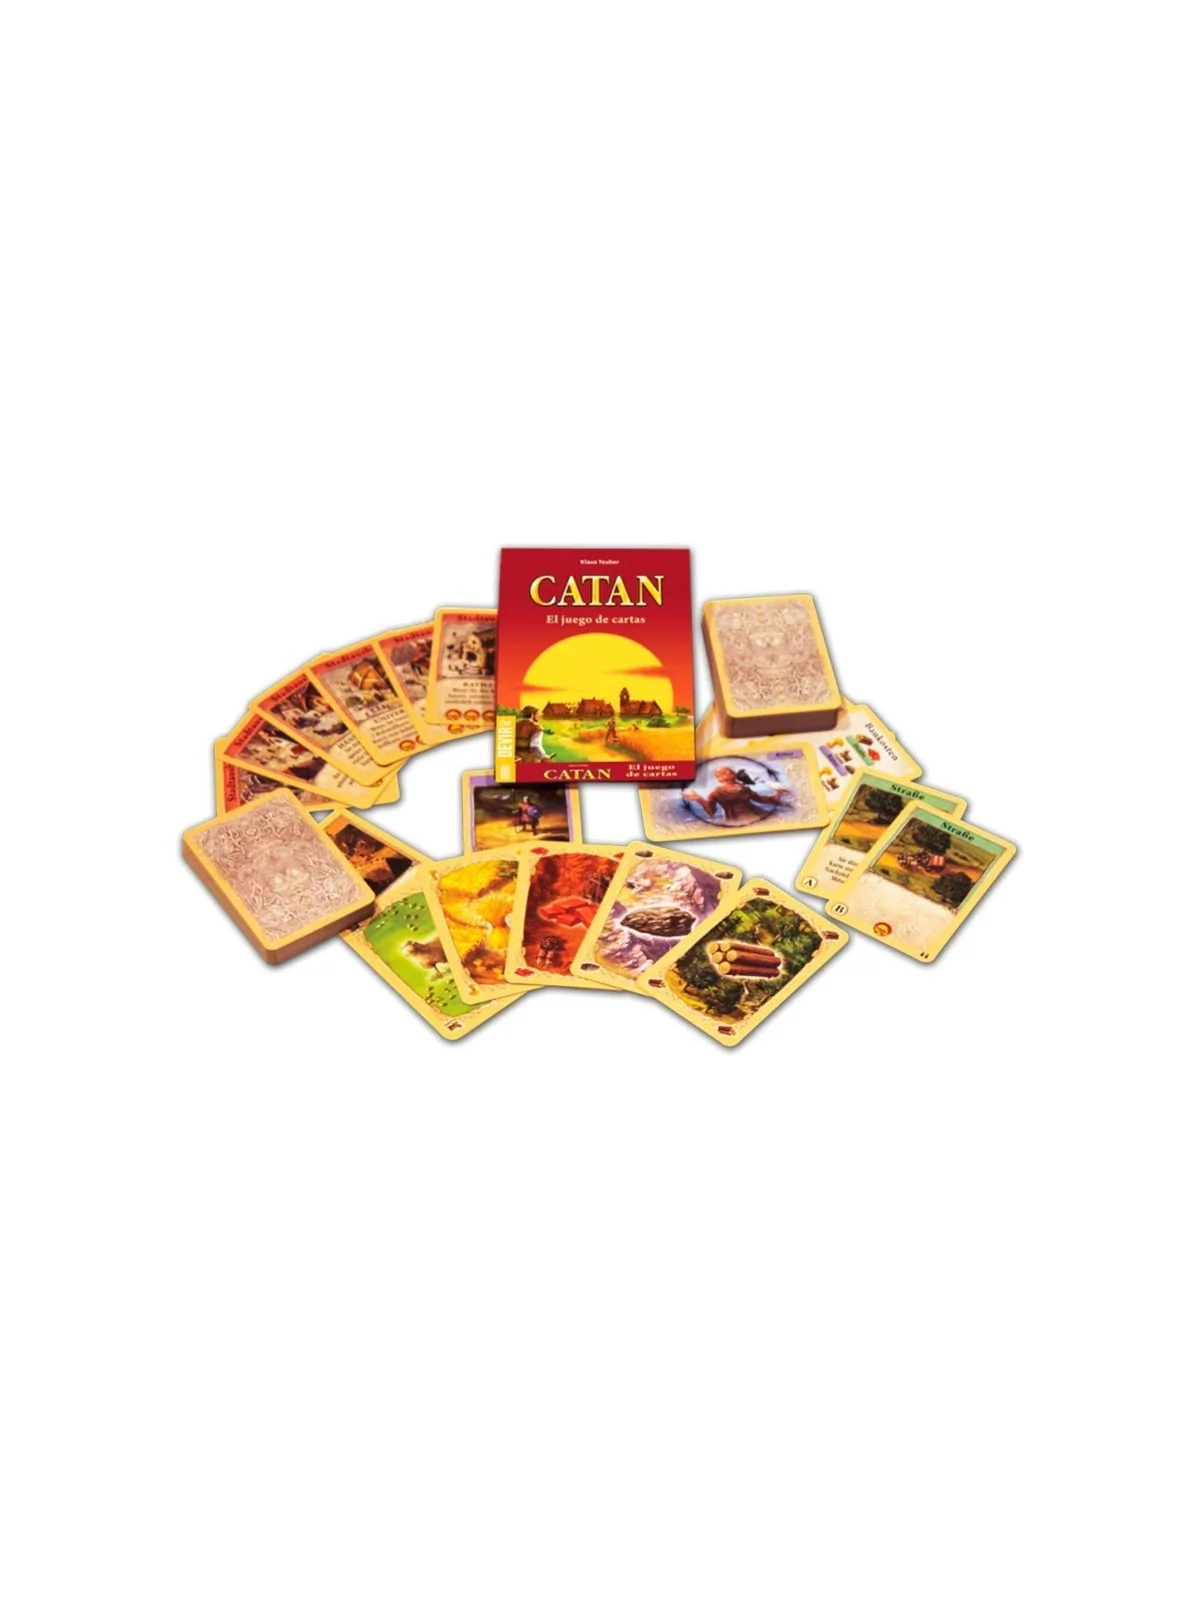 Comprar Catan: Juego de Cartas Mini barato al mejor precio 9,00 € de D